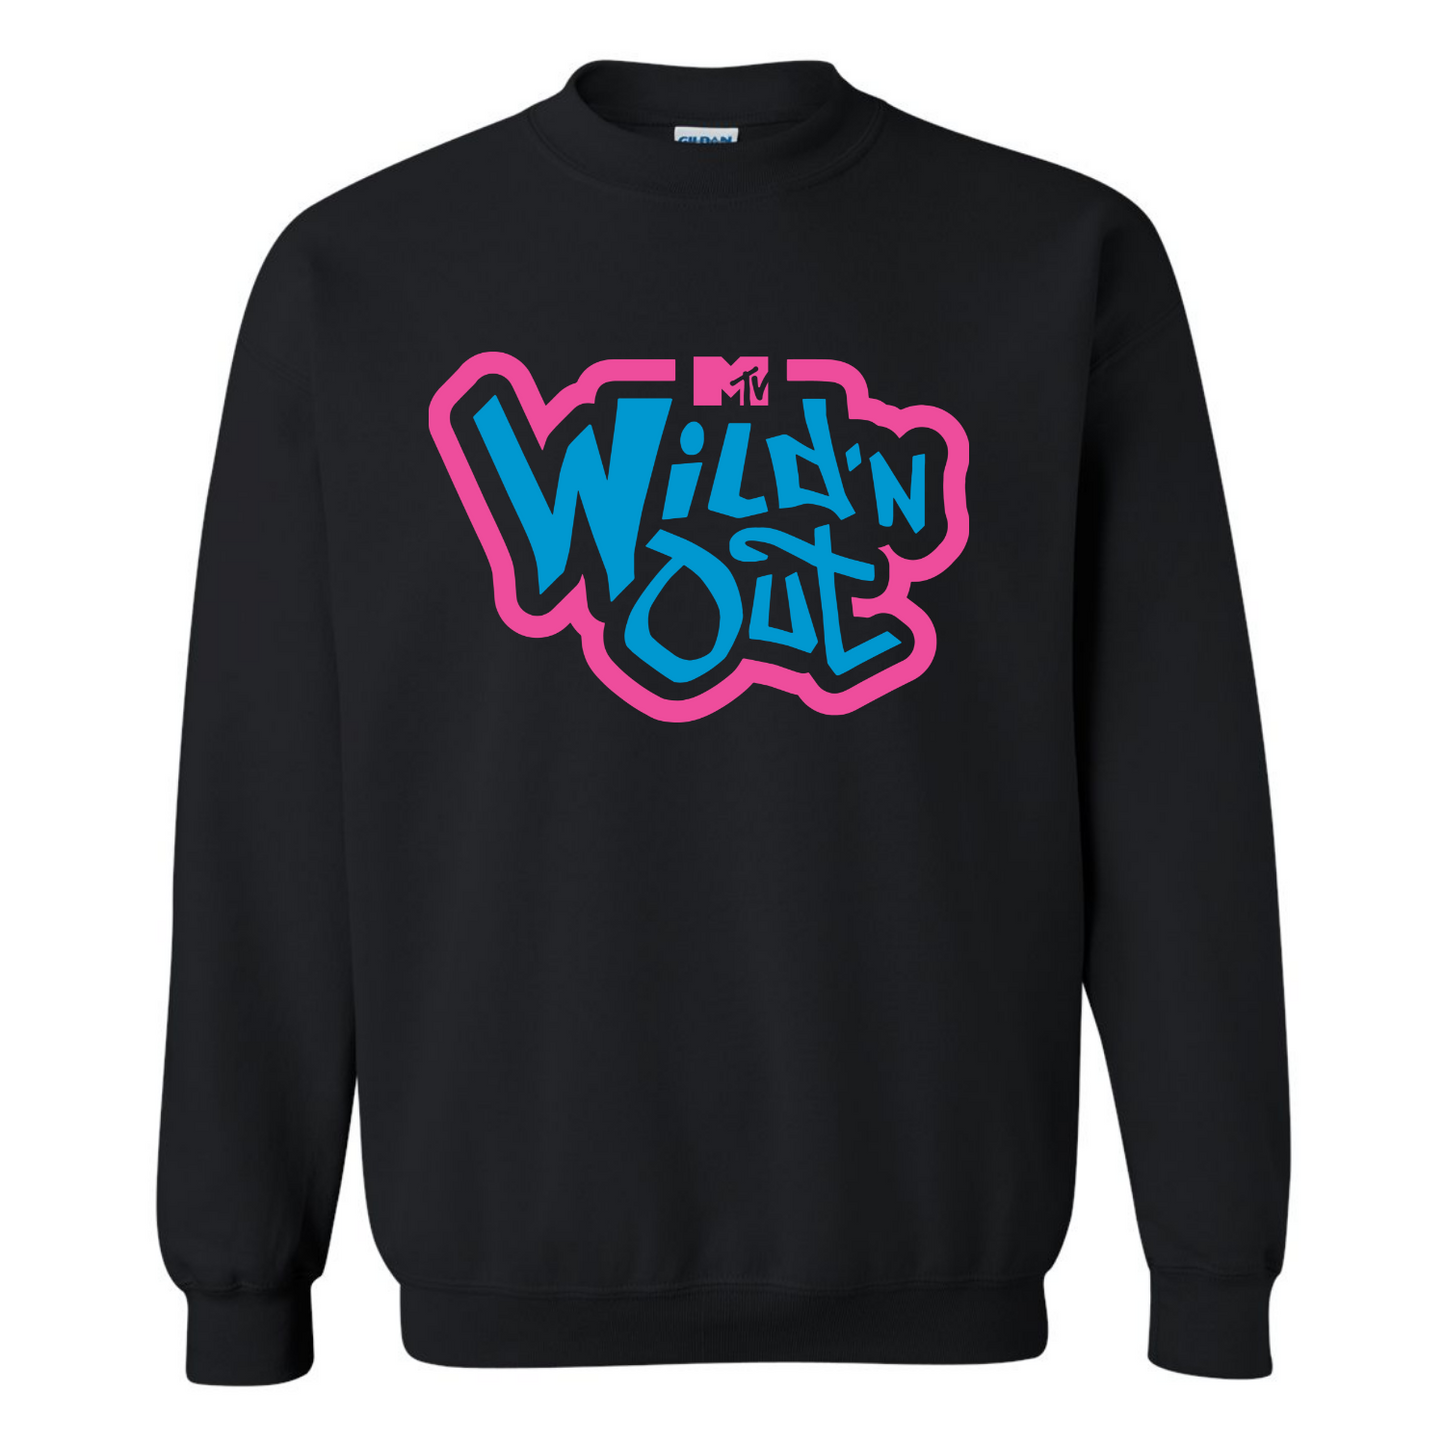 Wild 'N Out Neon Old School Adult Crew Neck Sweatshirt